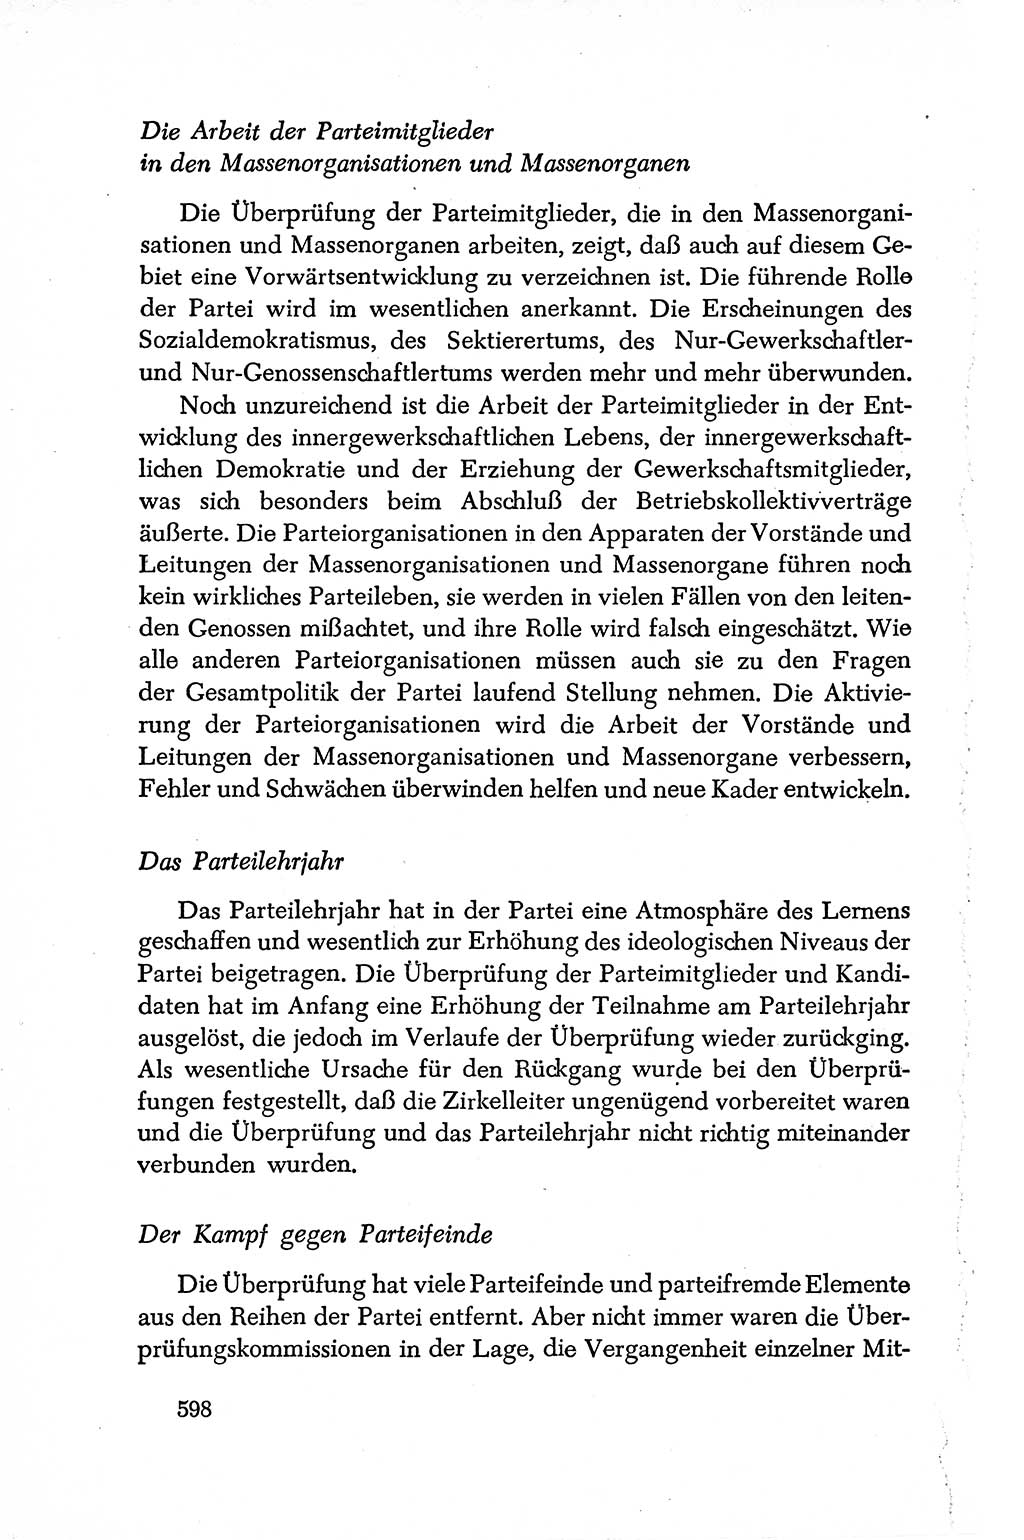 Dokumente der Sozialistischen Einheitspartei Deutschlands (SED) [Deutsche Demokratische Republik (DDR)] 1950-1952, Seite 598 (Dok. SED DDR 1950-1952, S. 598)